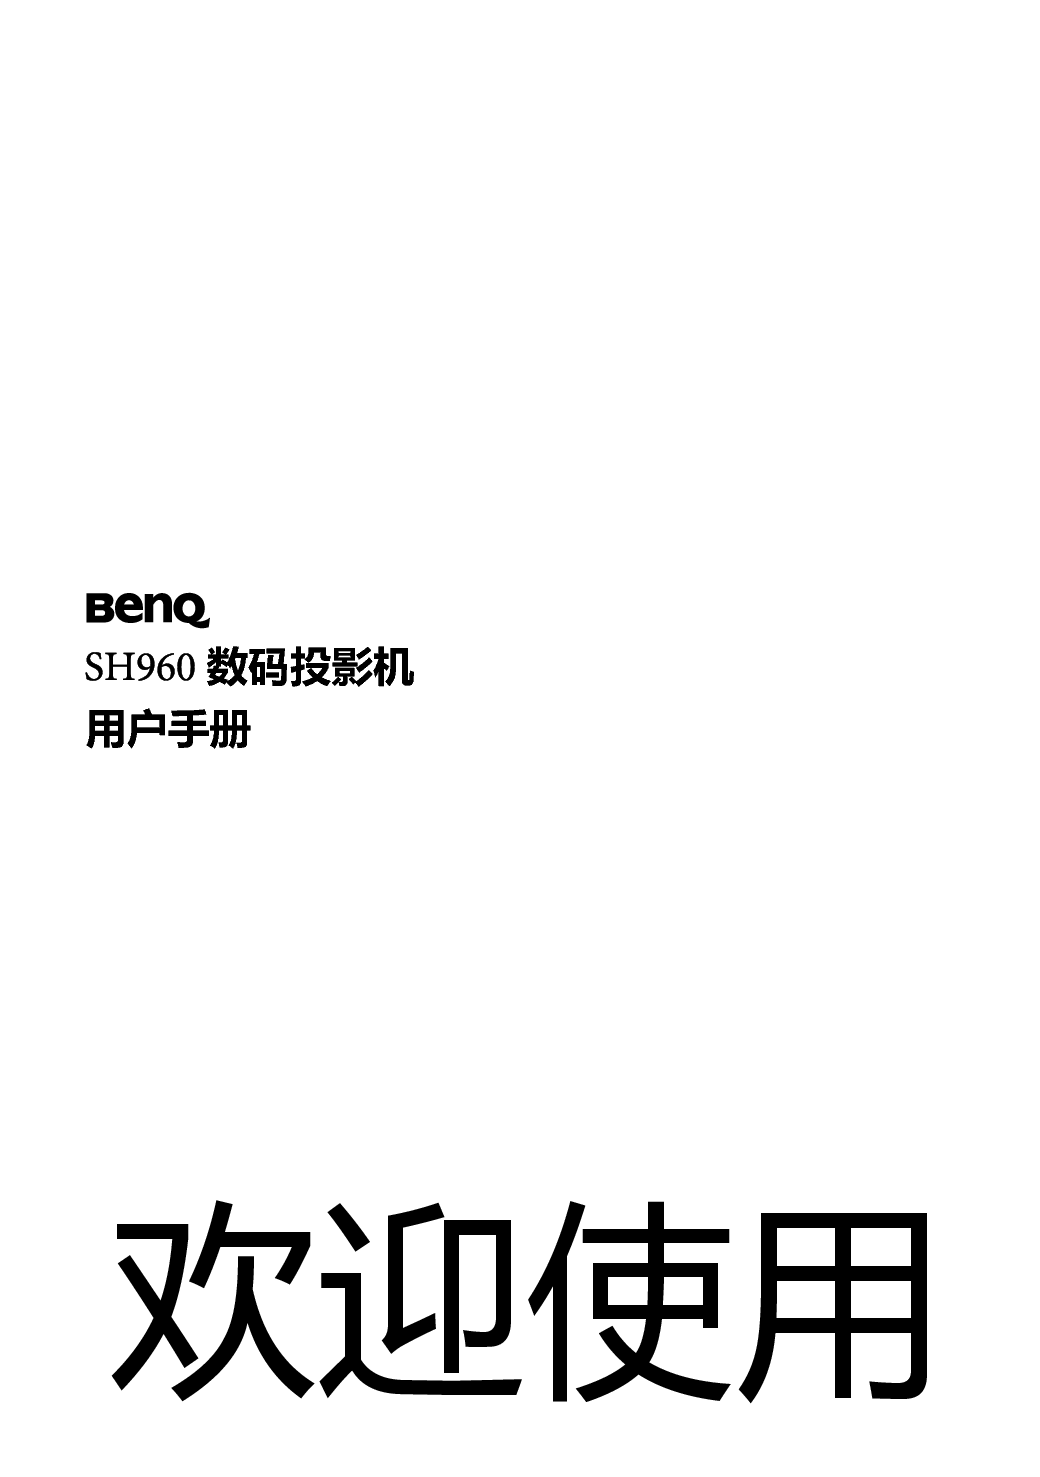 明基 Benq SH960 用户手册 封面